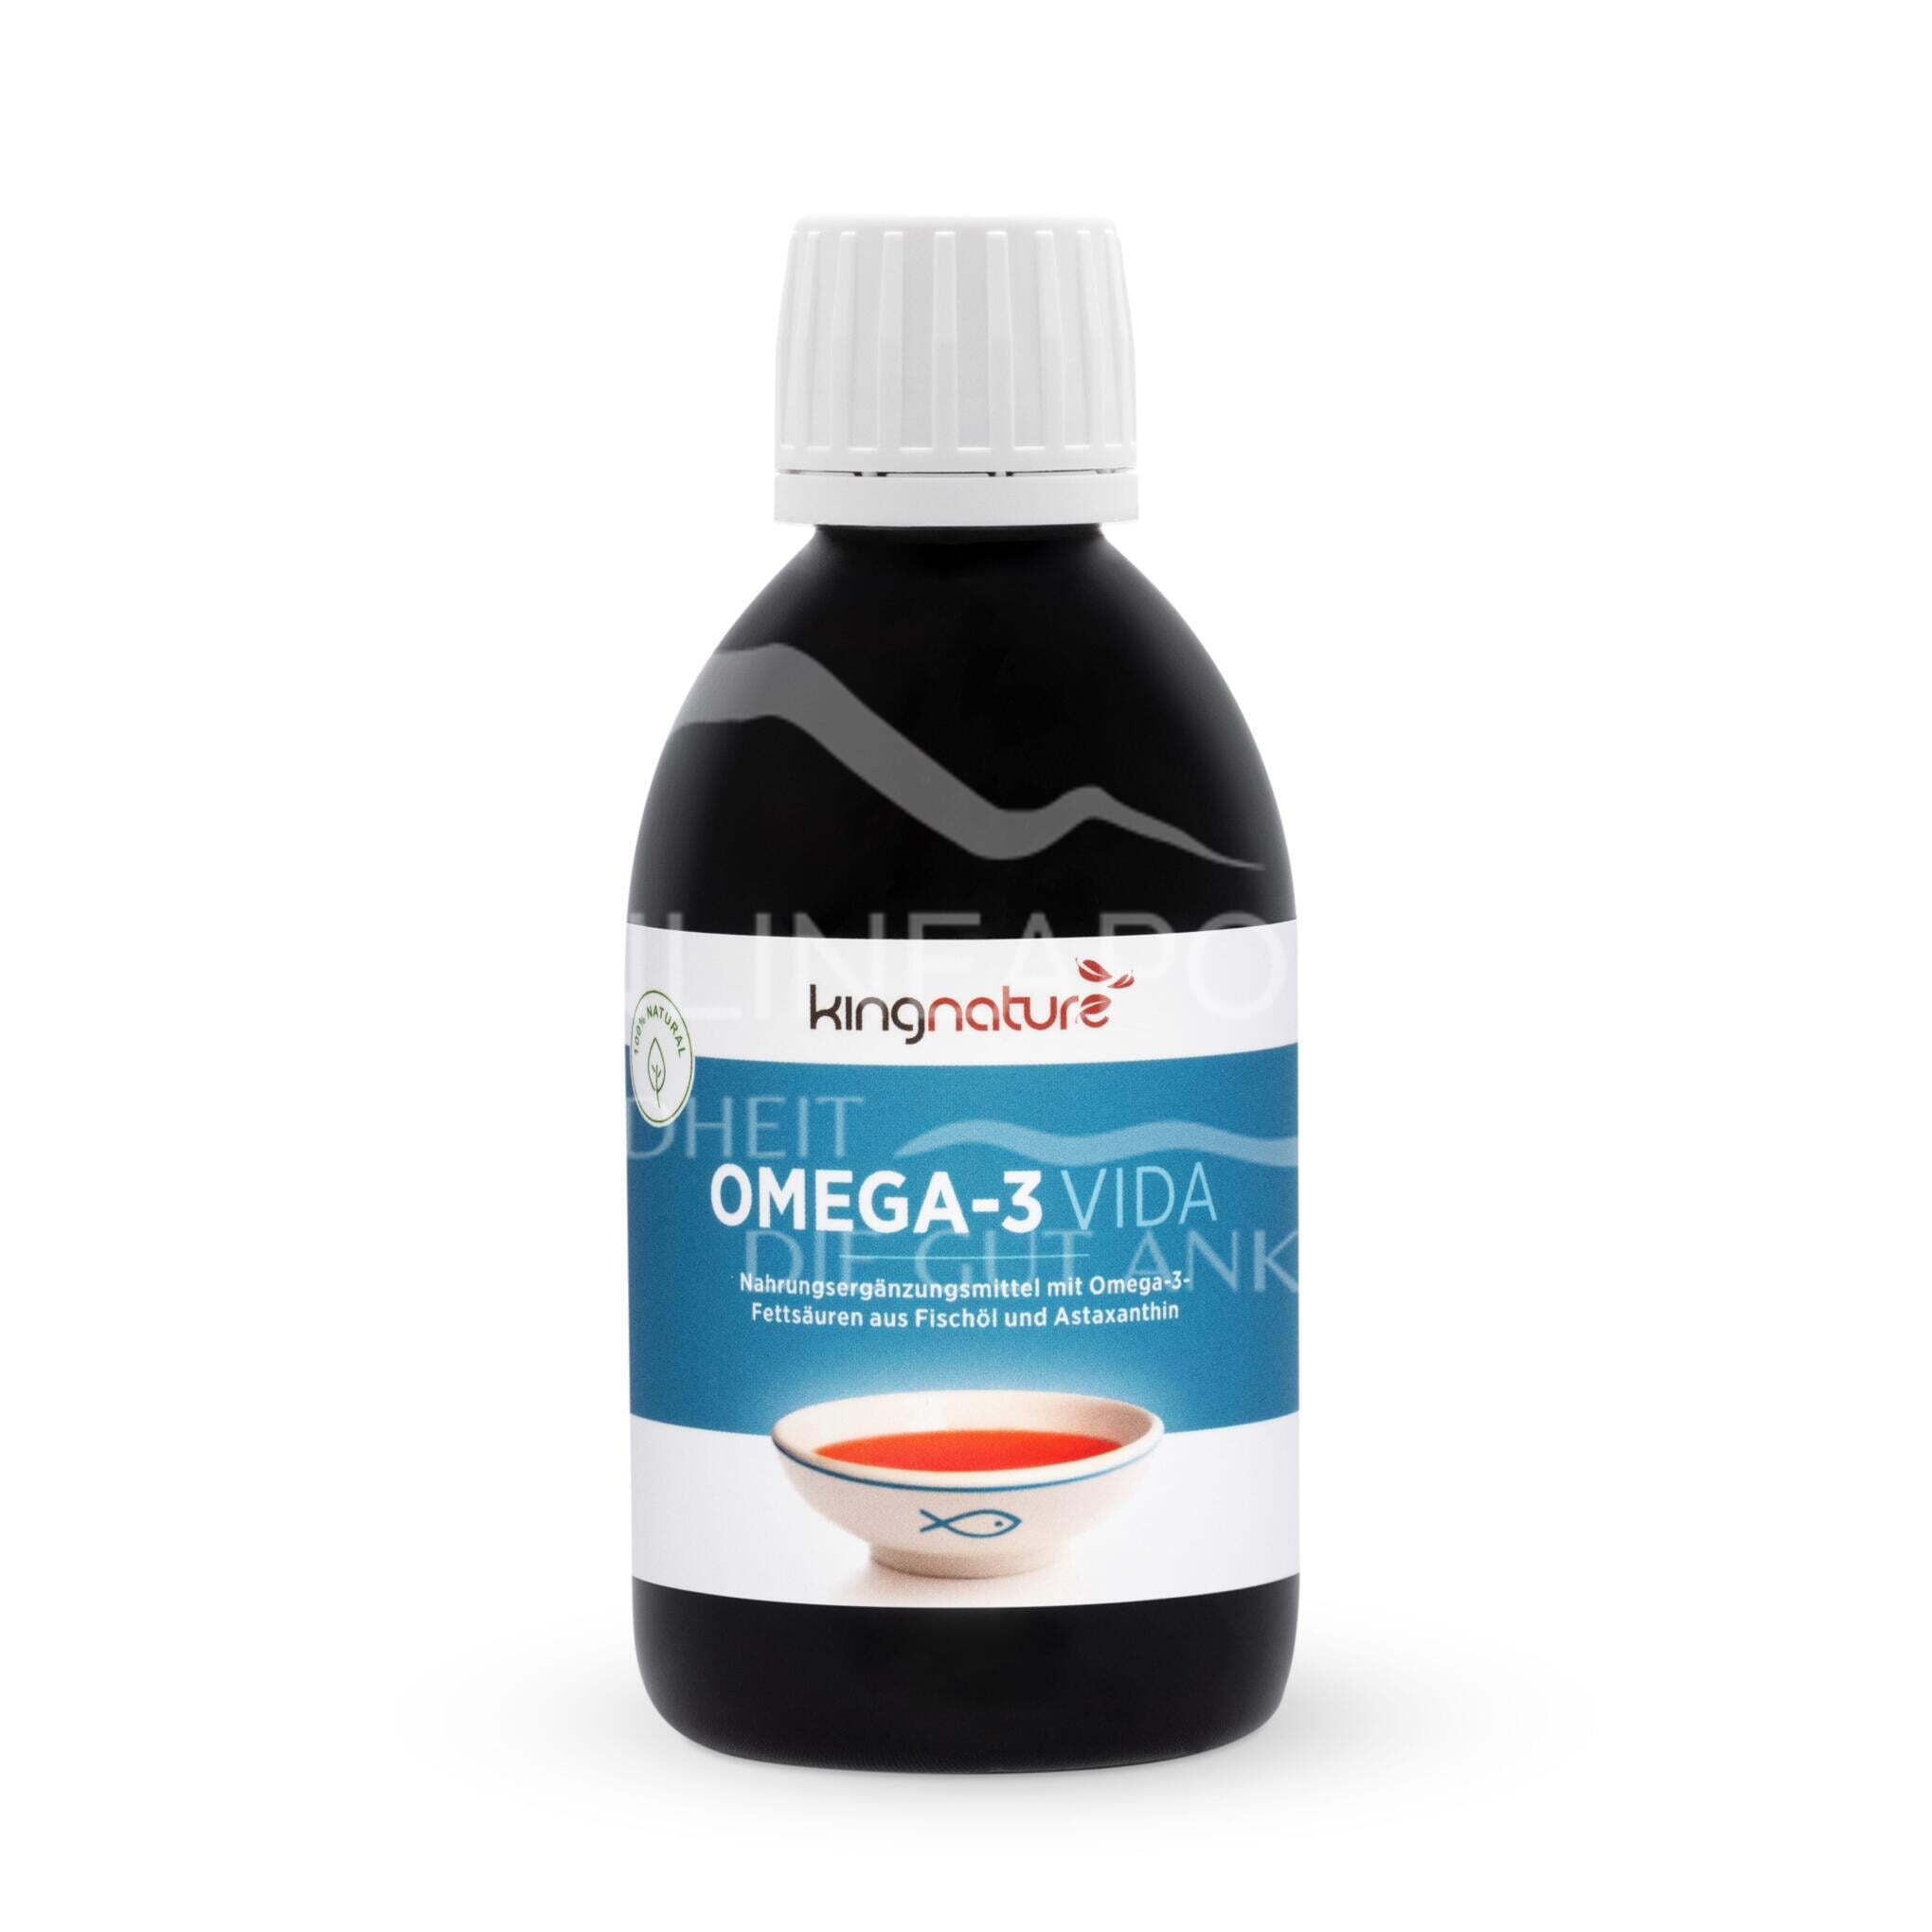 Kingnature Omega 3 Vida Fischöl